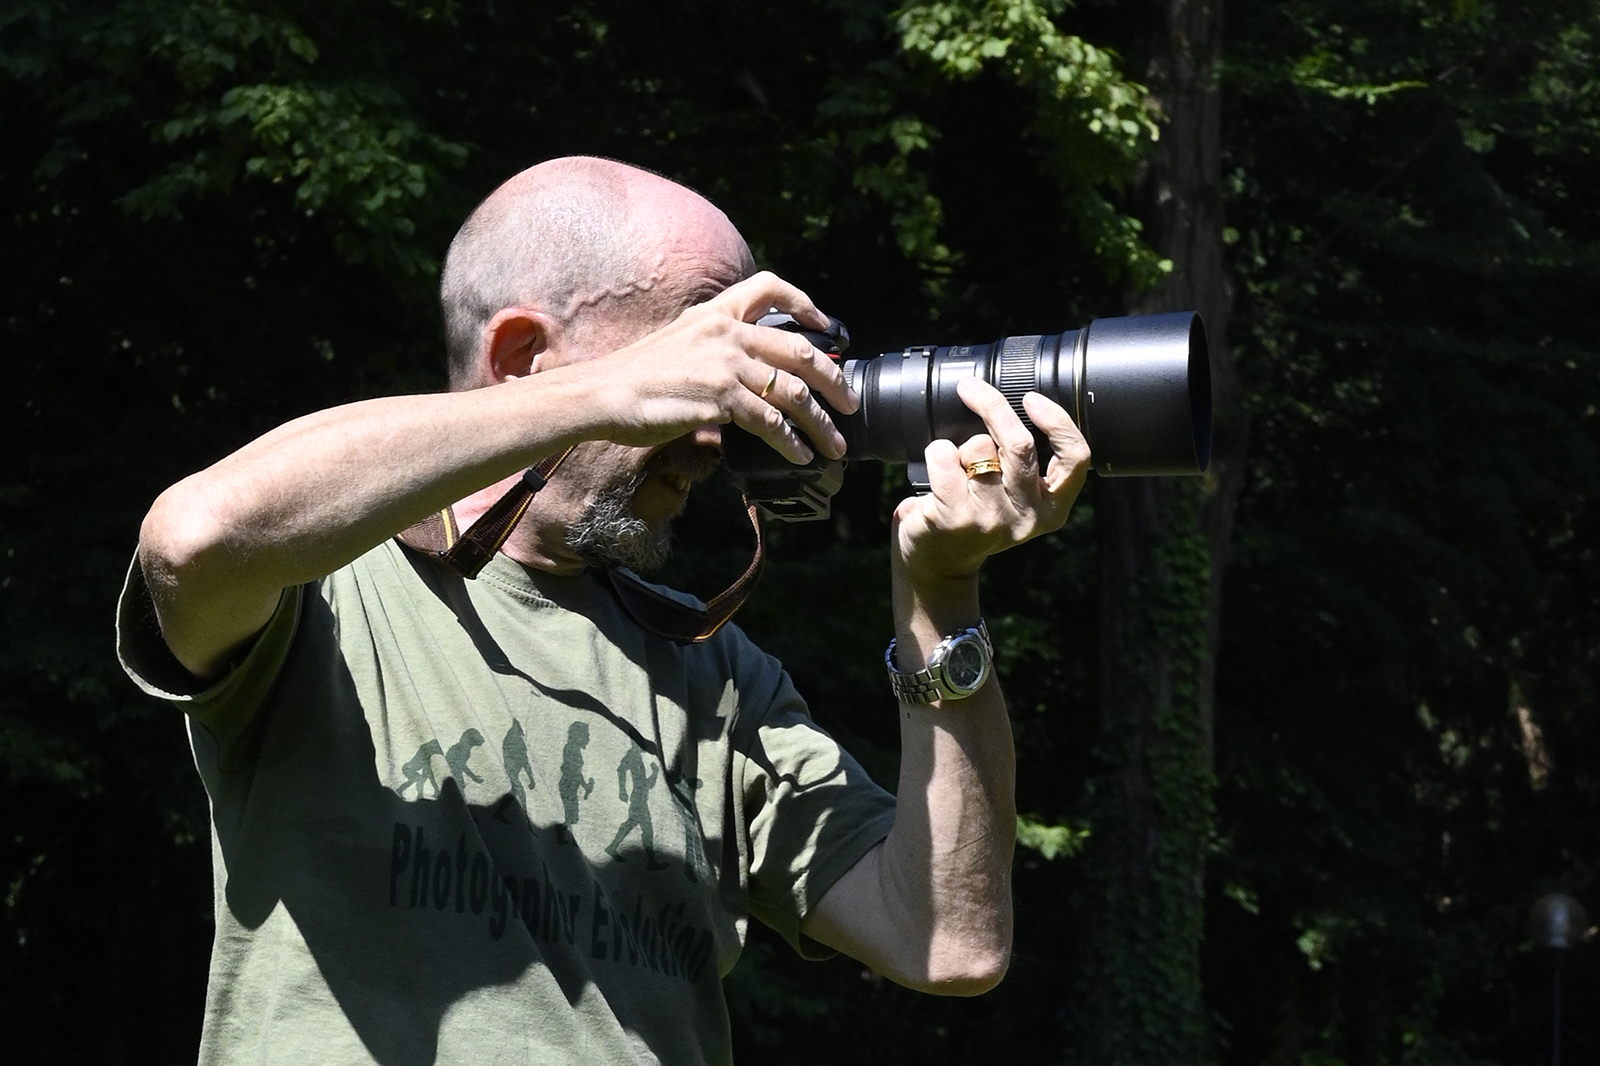 Maggiori informazioni su "[tutorial] Come fotografo le libellule."